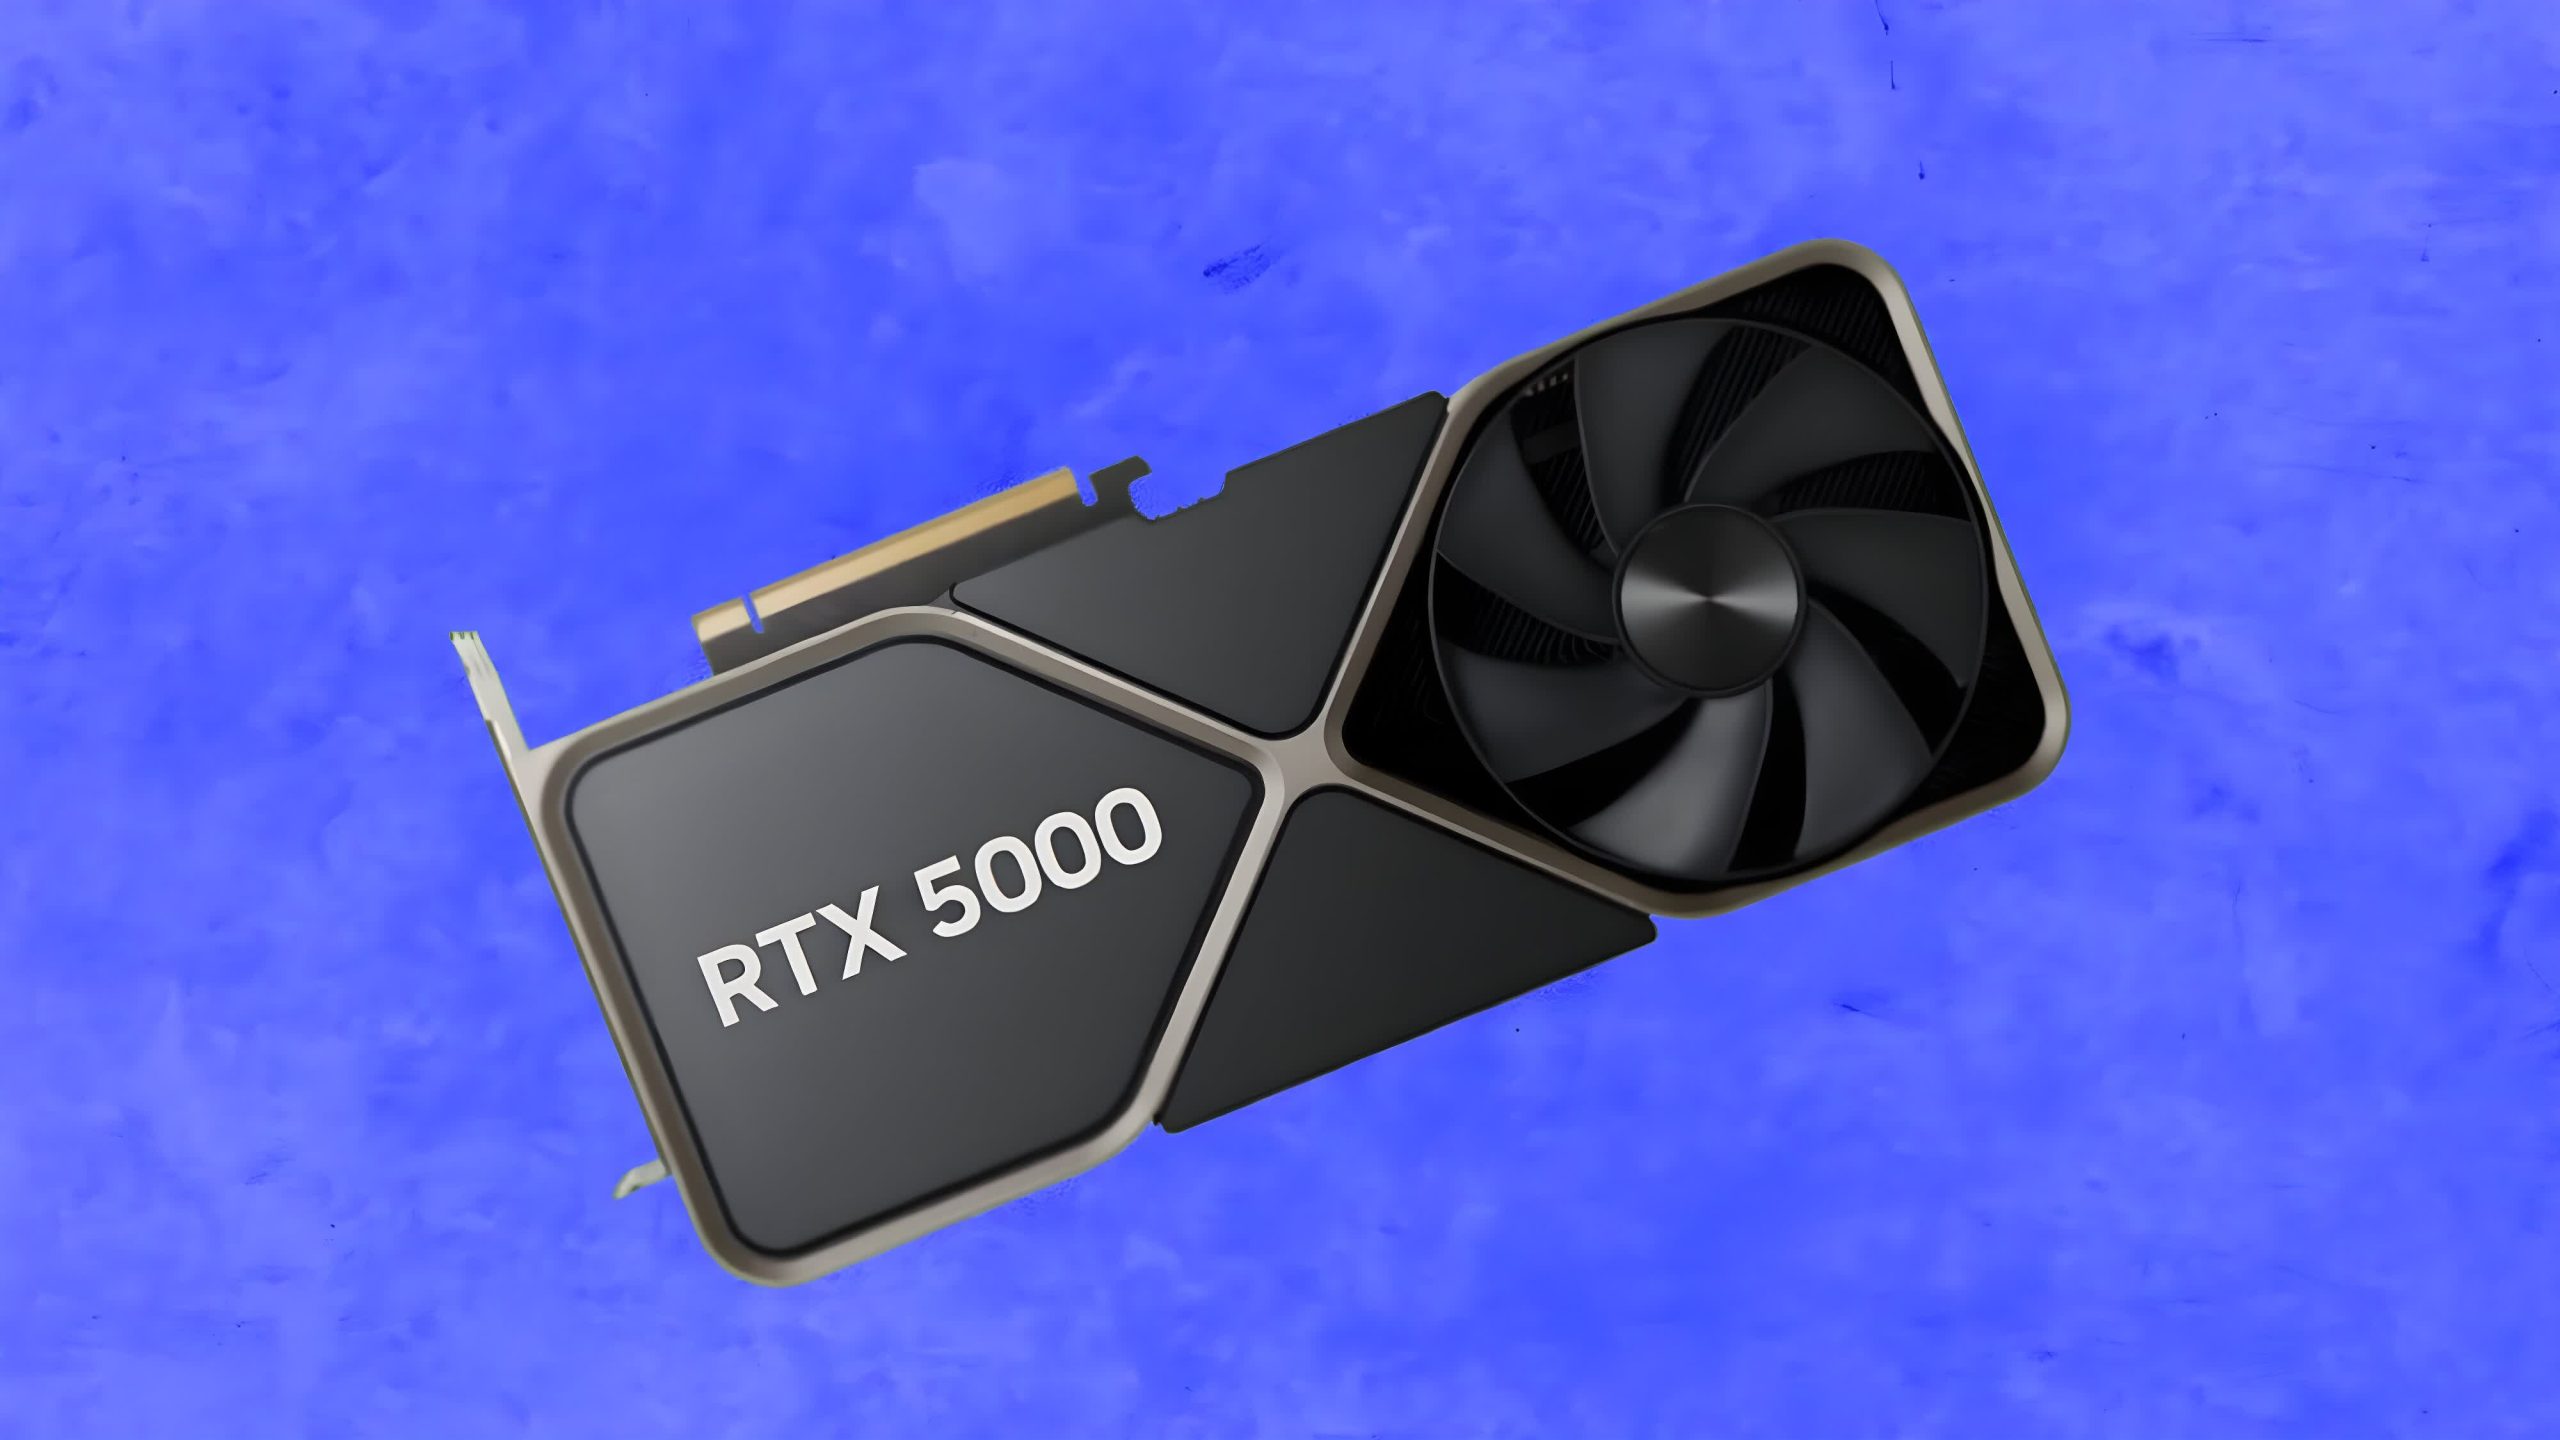 Las GPU Blackwell de la serie Nvidia RTX 50 están diseñadas para usar memoria GDDR7 de 28 Gbps con una interfaz de 512 bits